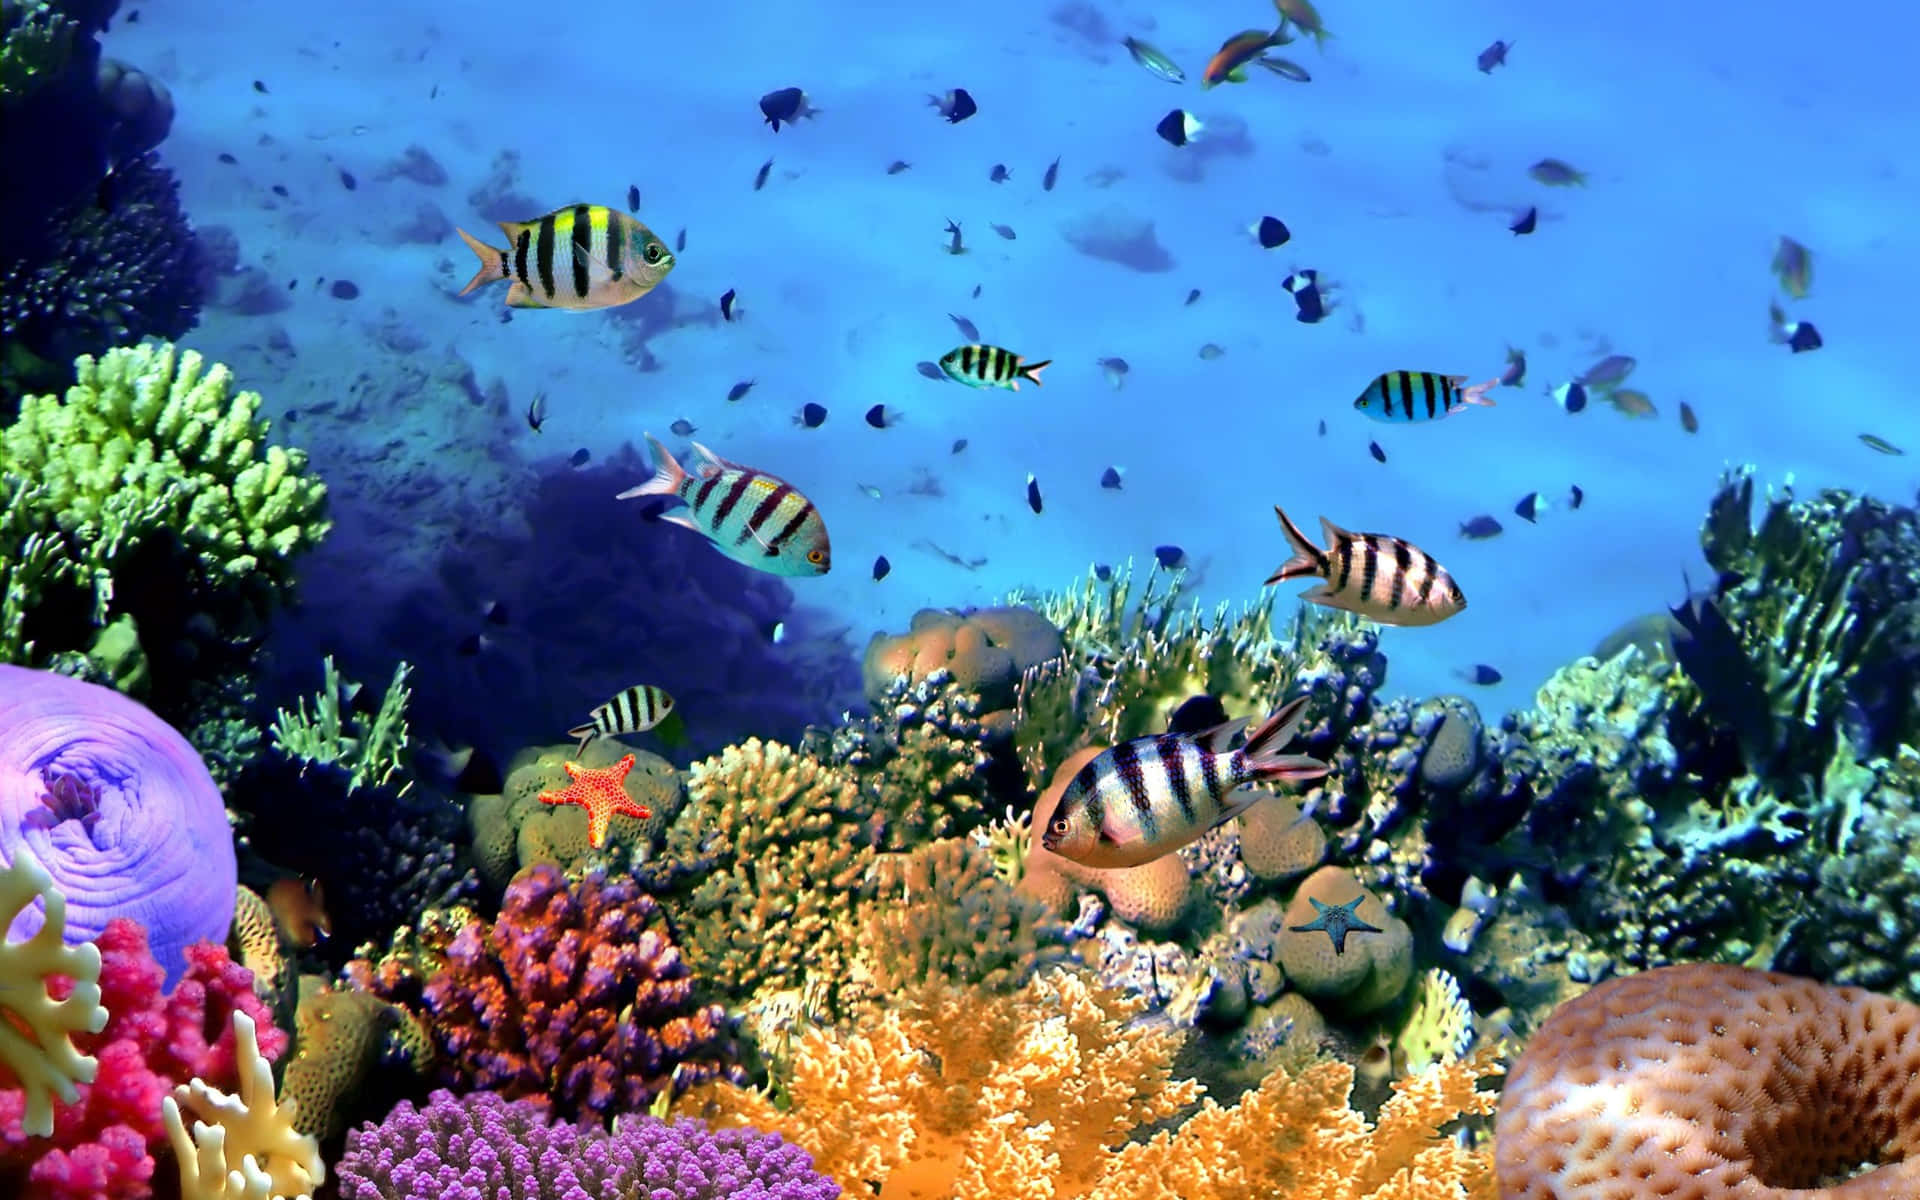 Unarrecife De Coral Colorido Con Muchos Peces Y Corales.